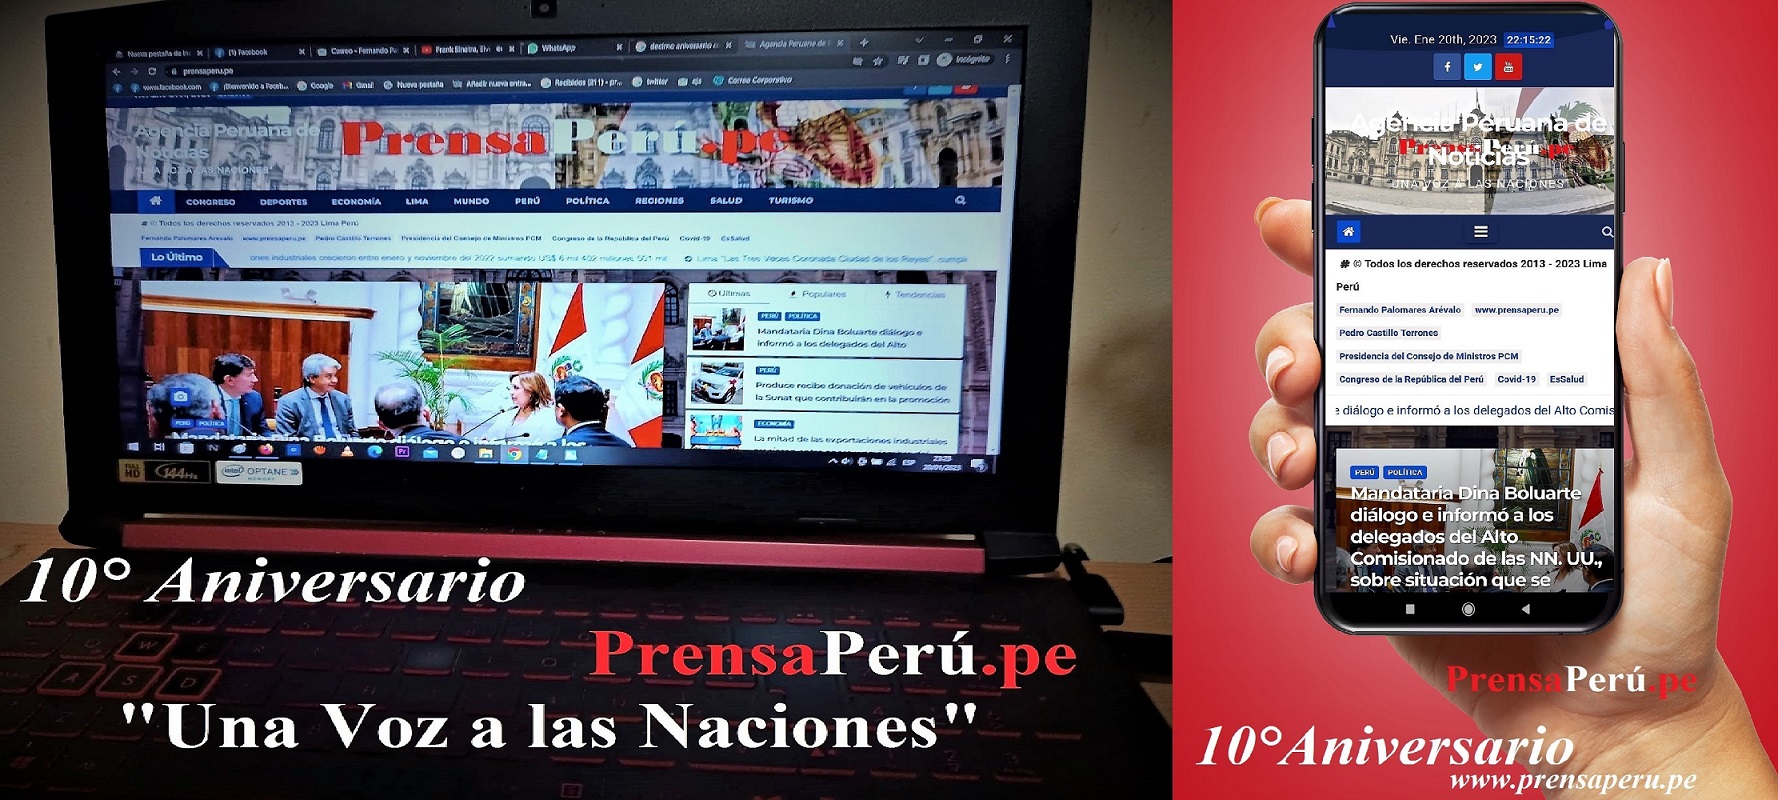 PrensaPerú.pe celebra su "10° Aniversario de Fundación", siendo la casa editora virtual de prensa de todos los peruanos.